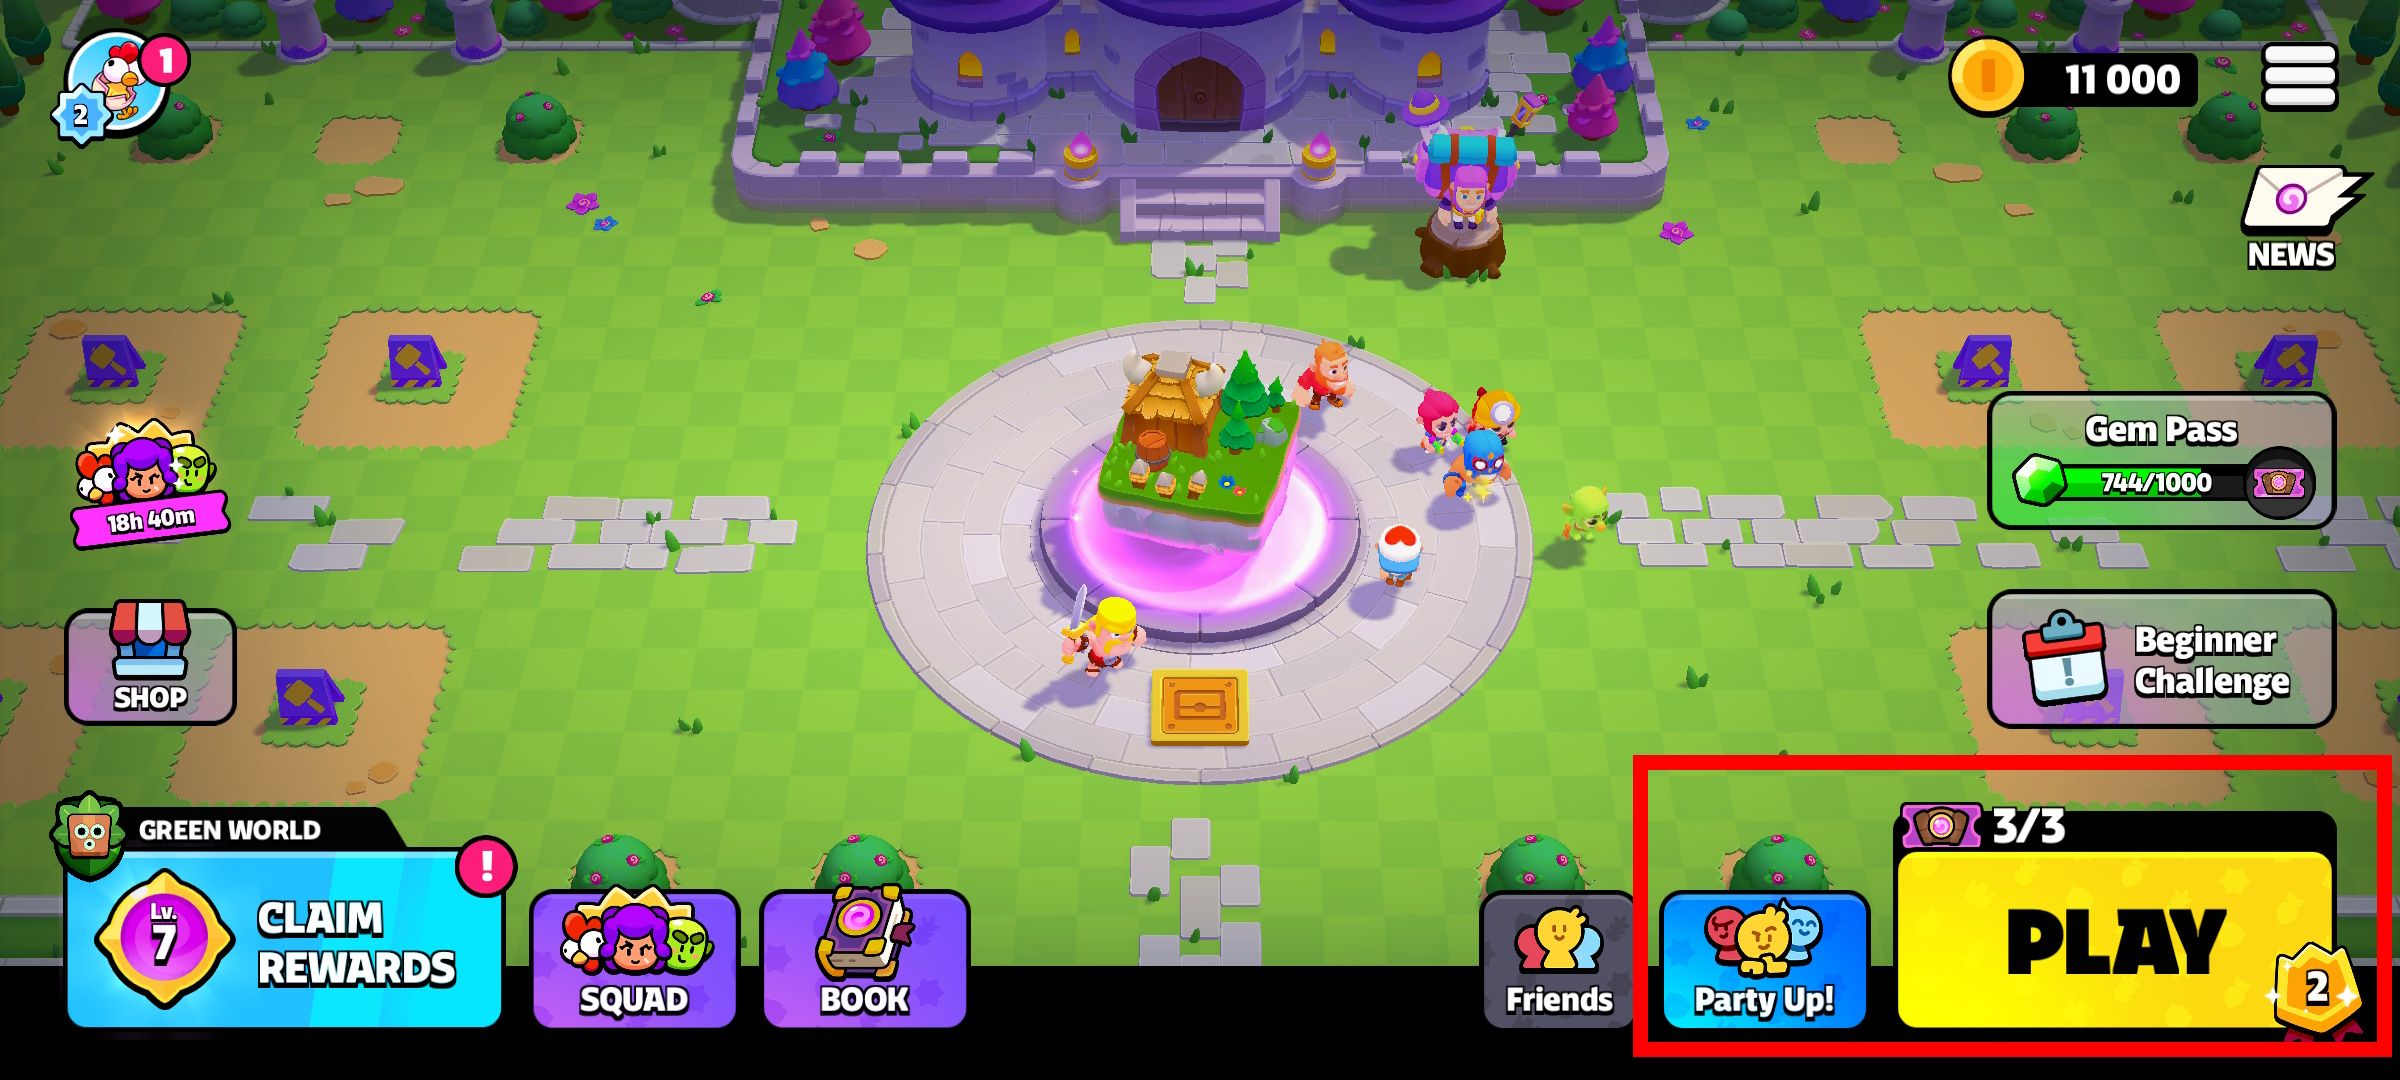 contorno de retângulo vermelho sobre o botão Party Up e Play no menu principal dos Squad Busters